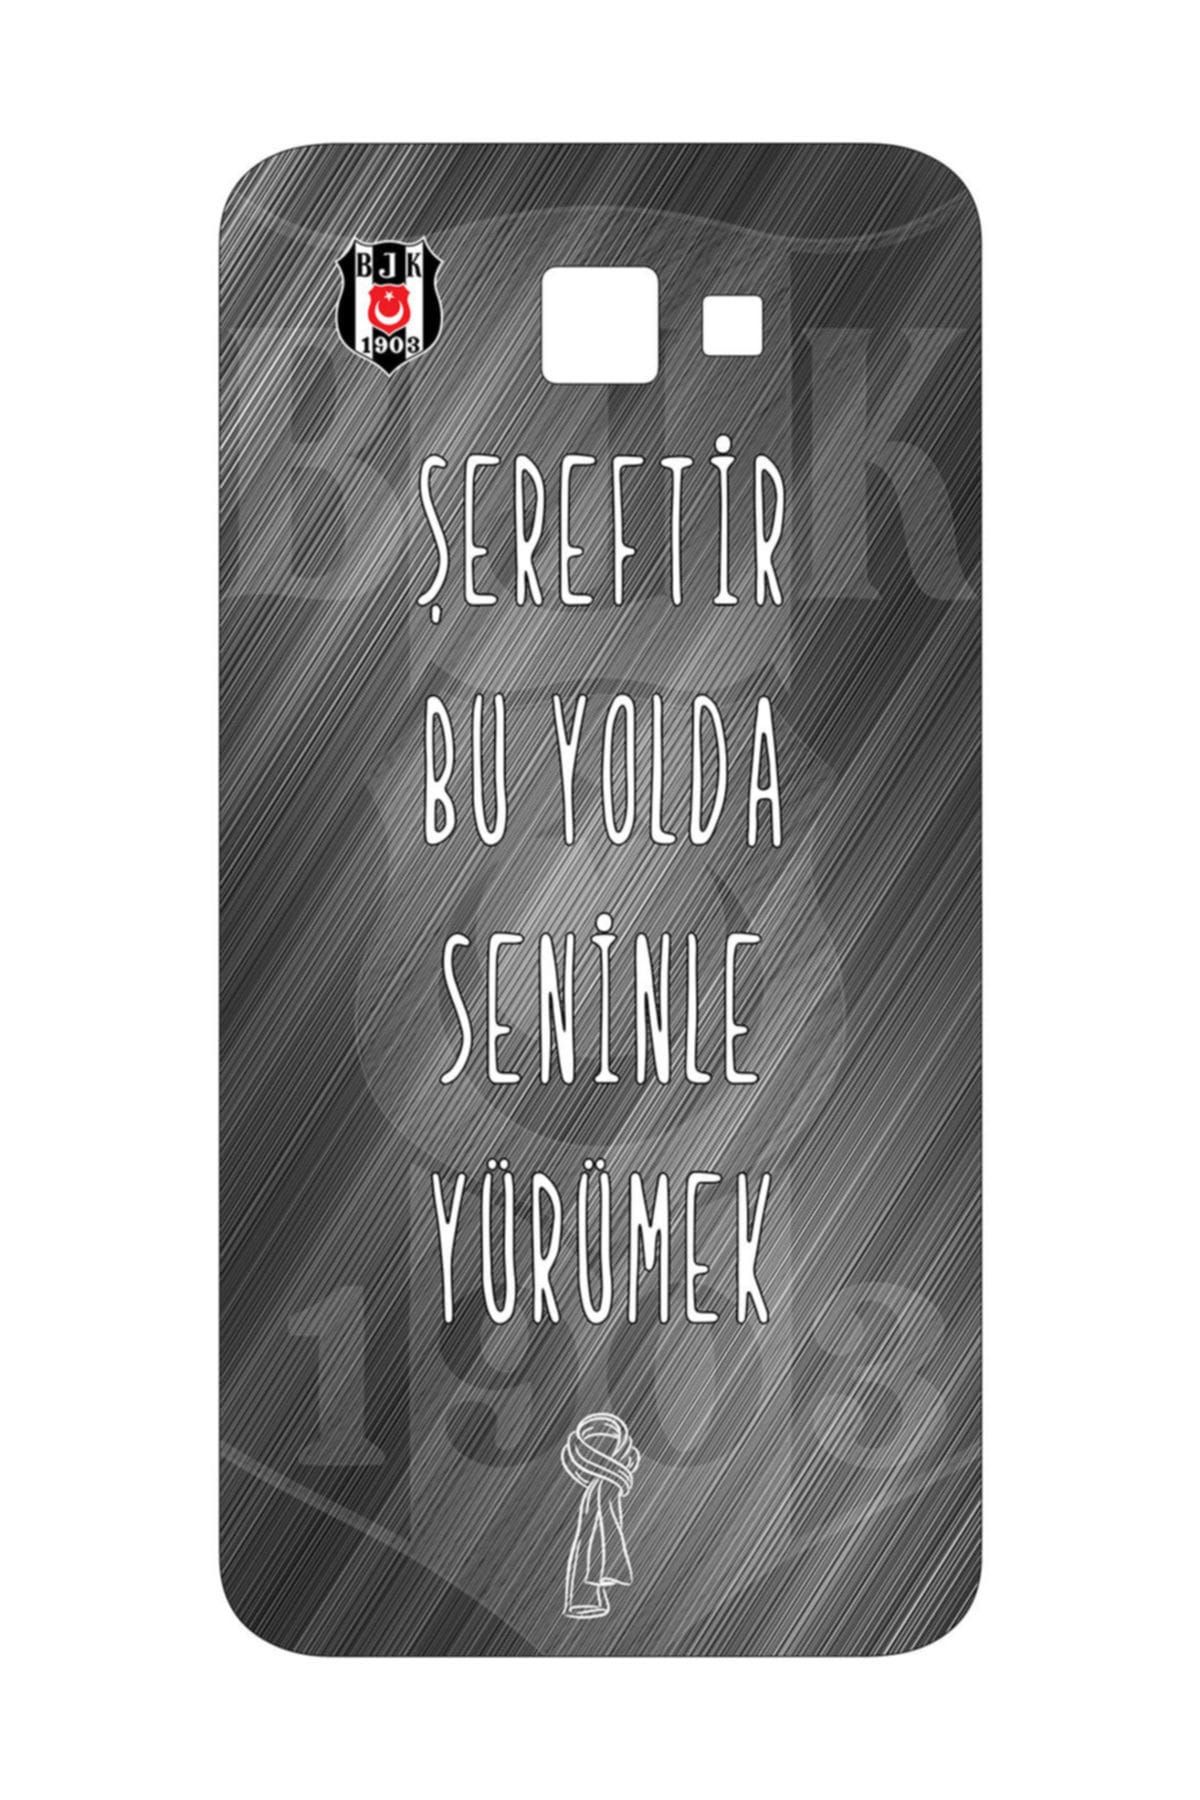 Beşiktaş BJK SAMSUNG J7 PRIME ŞEREF